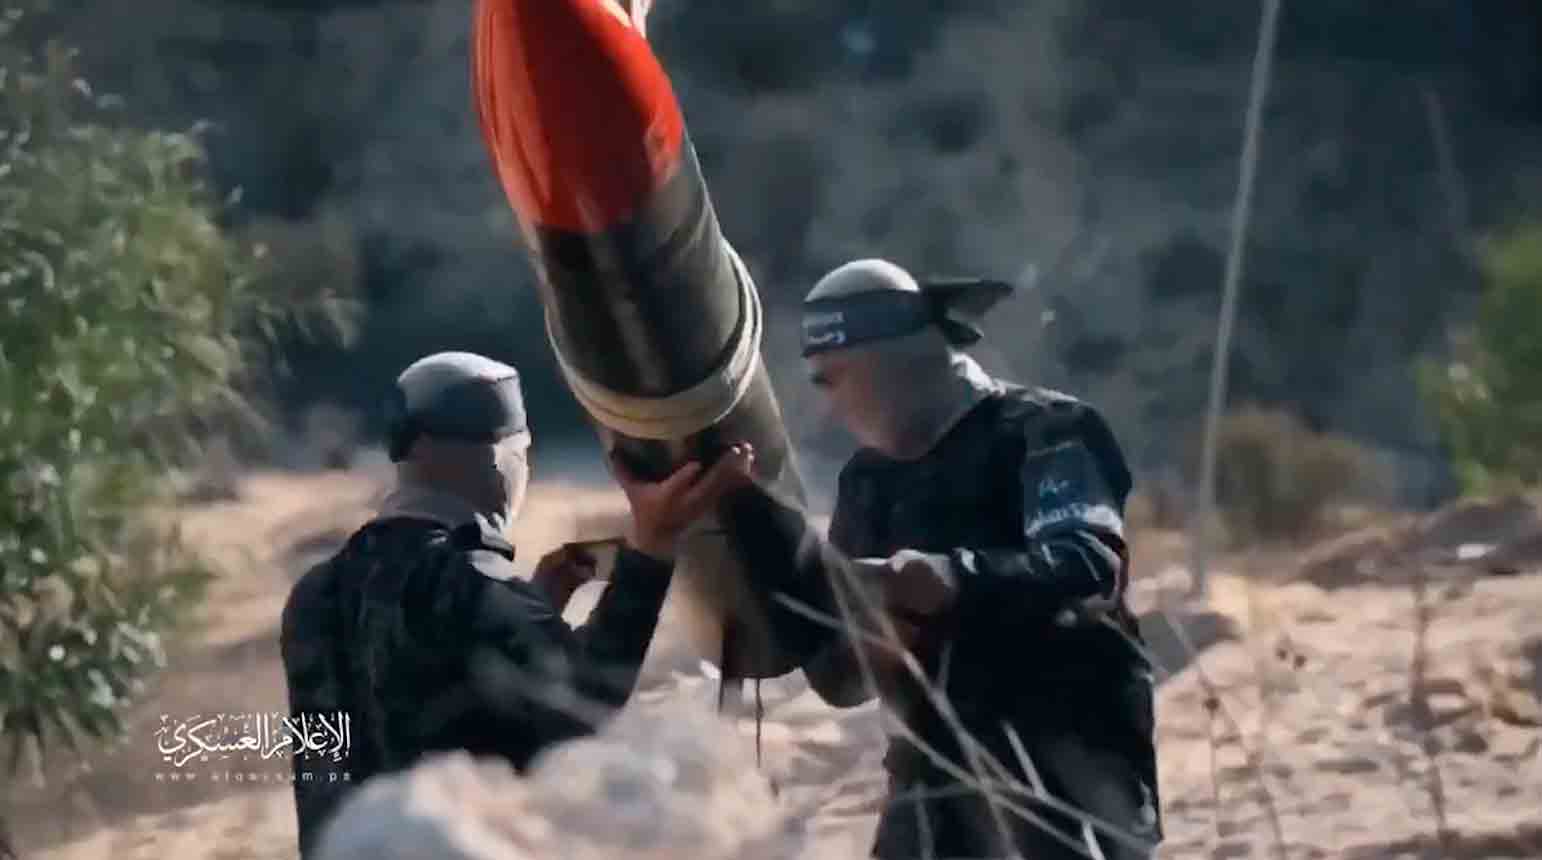 Το βίντεο δείχνει το Χαμάς να κατασκευάζει πυραύλους με σωλήνες που προέρχονται από υποδομές αποχέτευσης. Φωτογραφία και βίντεο: Αναπαραγωγή Twitter